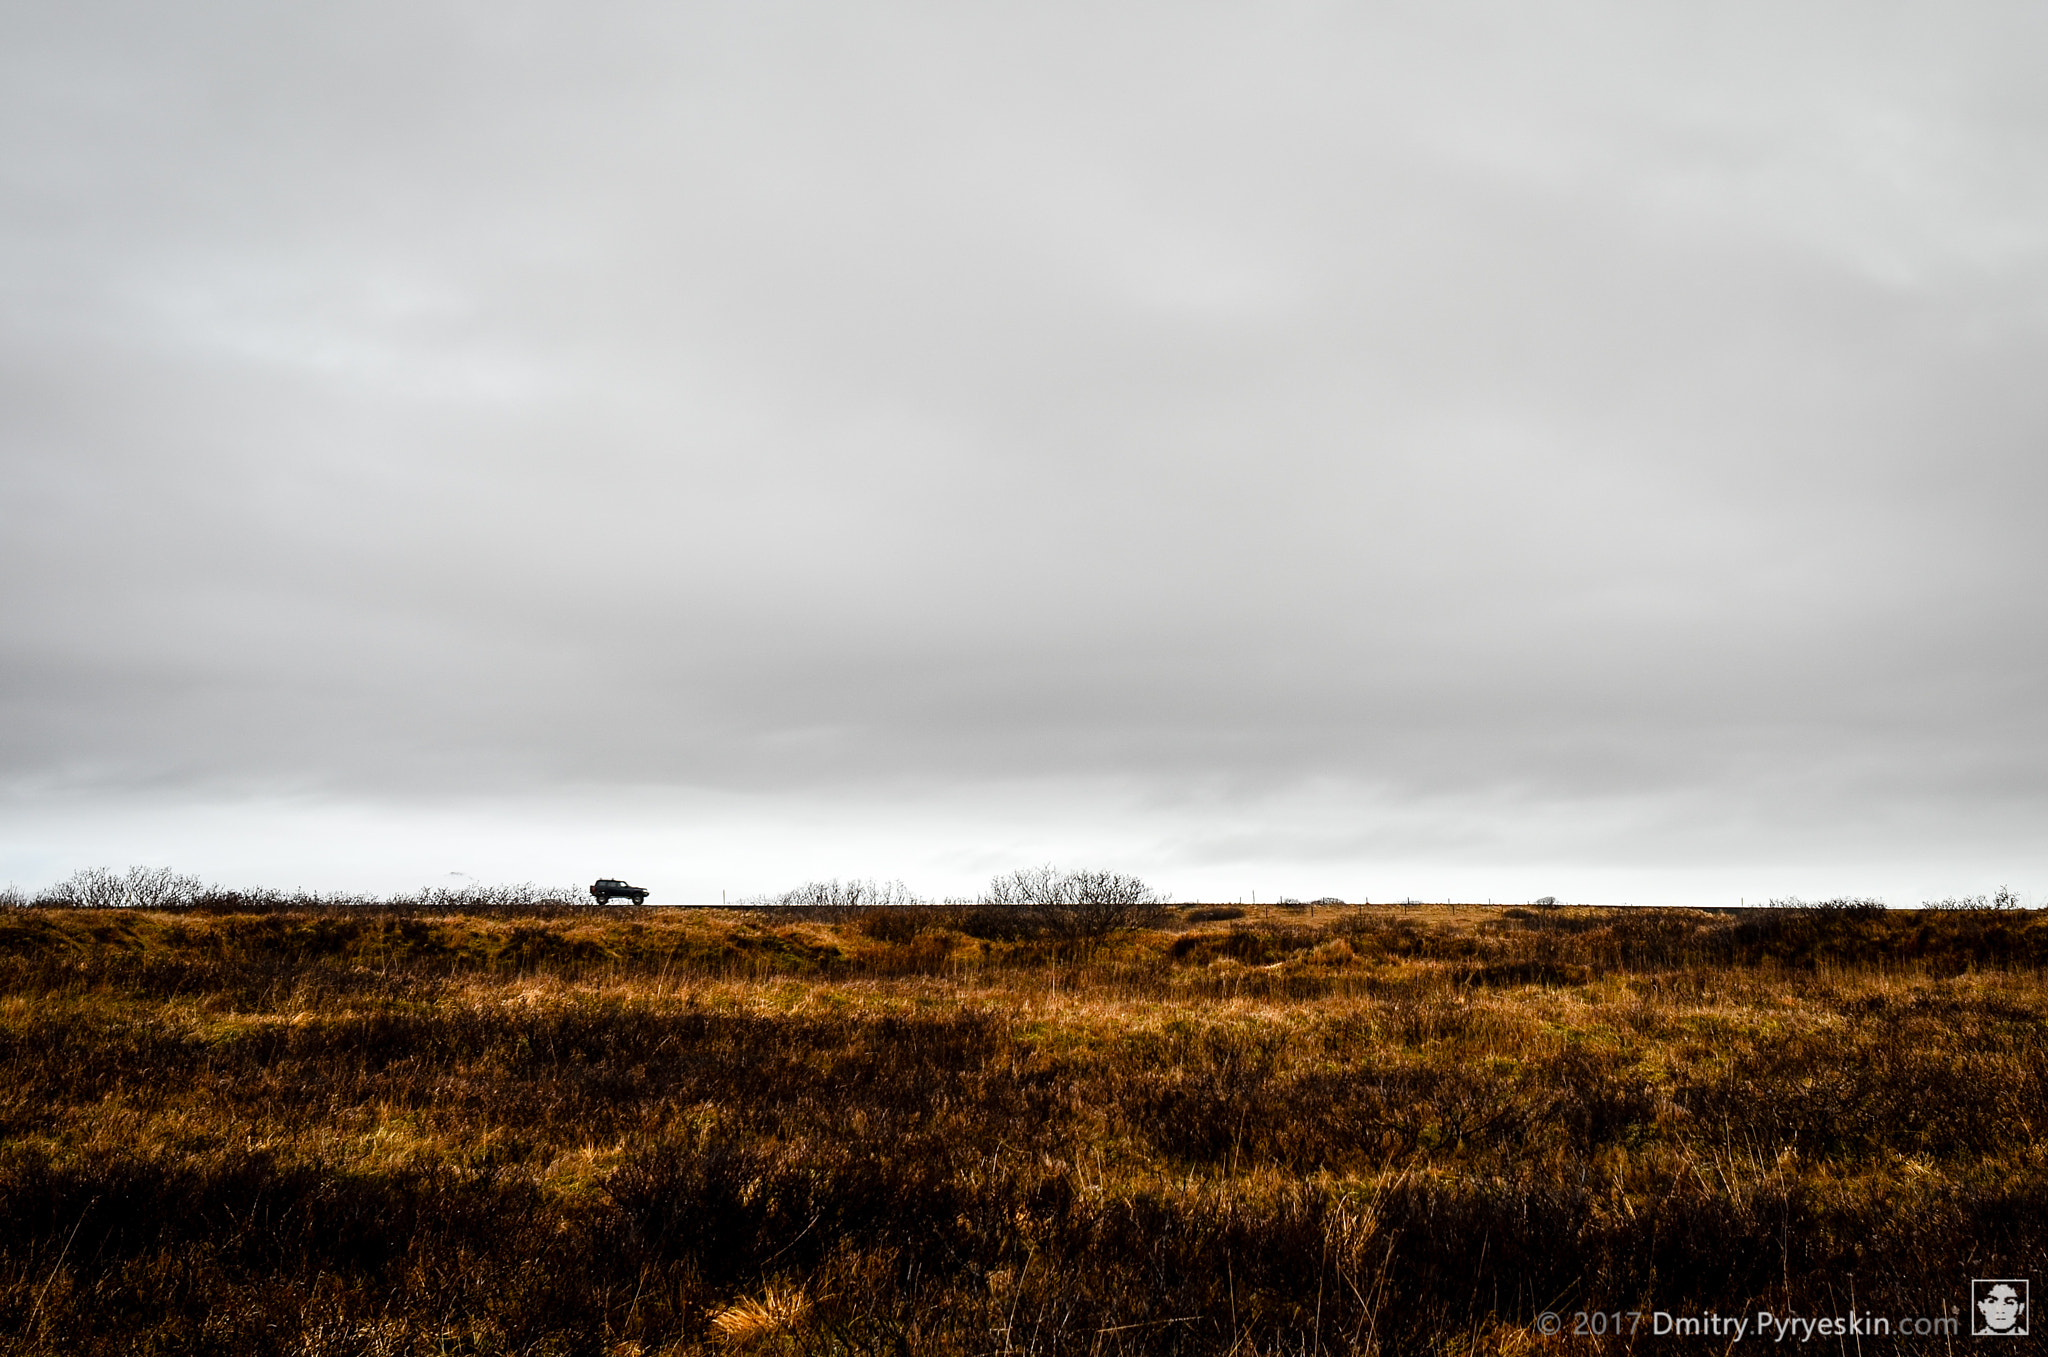 Nikon AF Nikkor 24mm F2.8D sample photo. Lonesome iceland photography